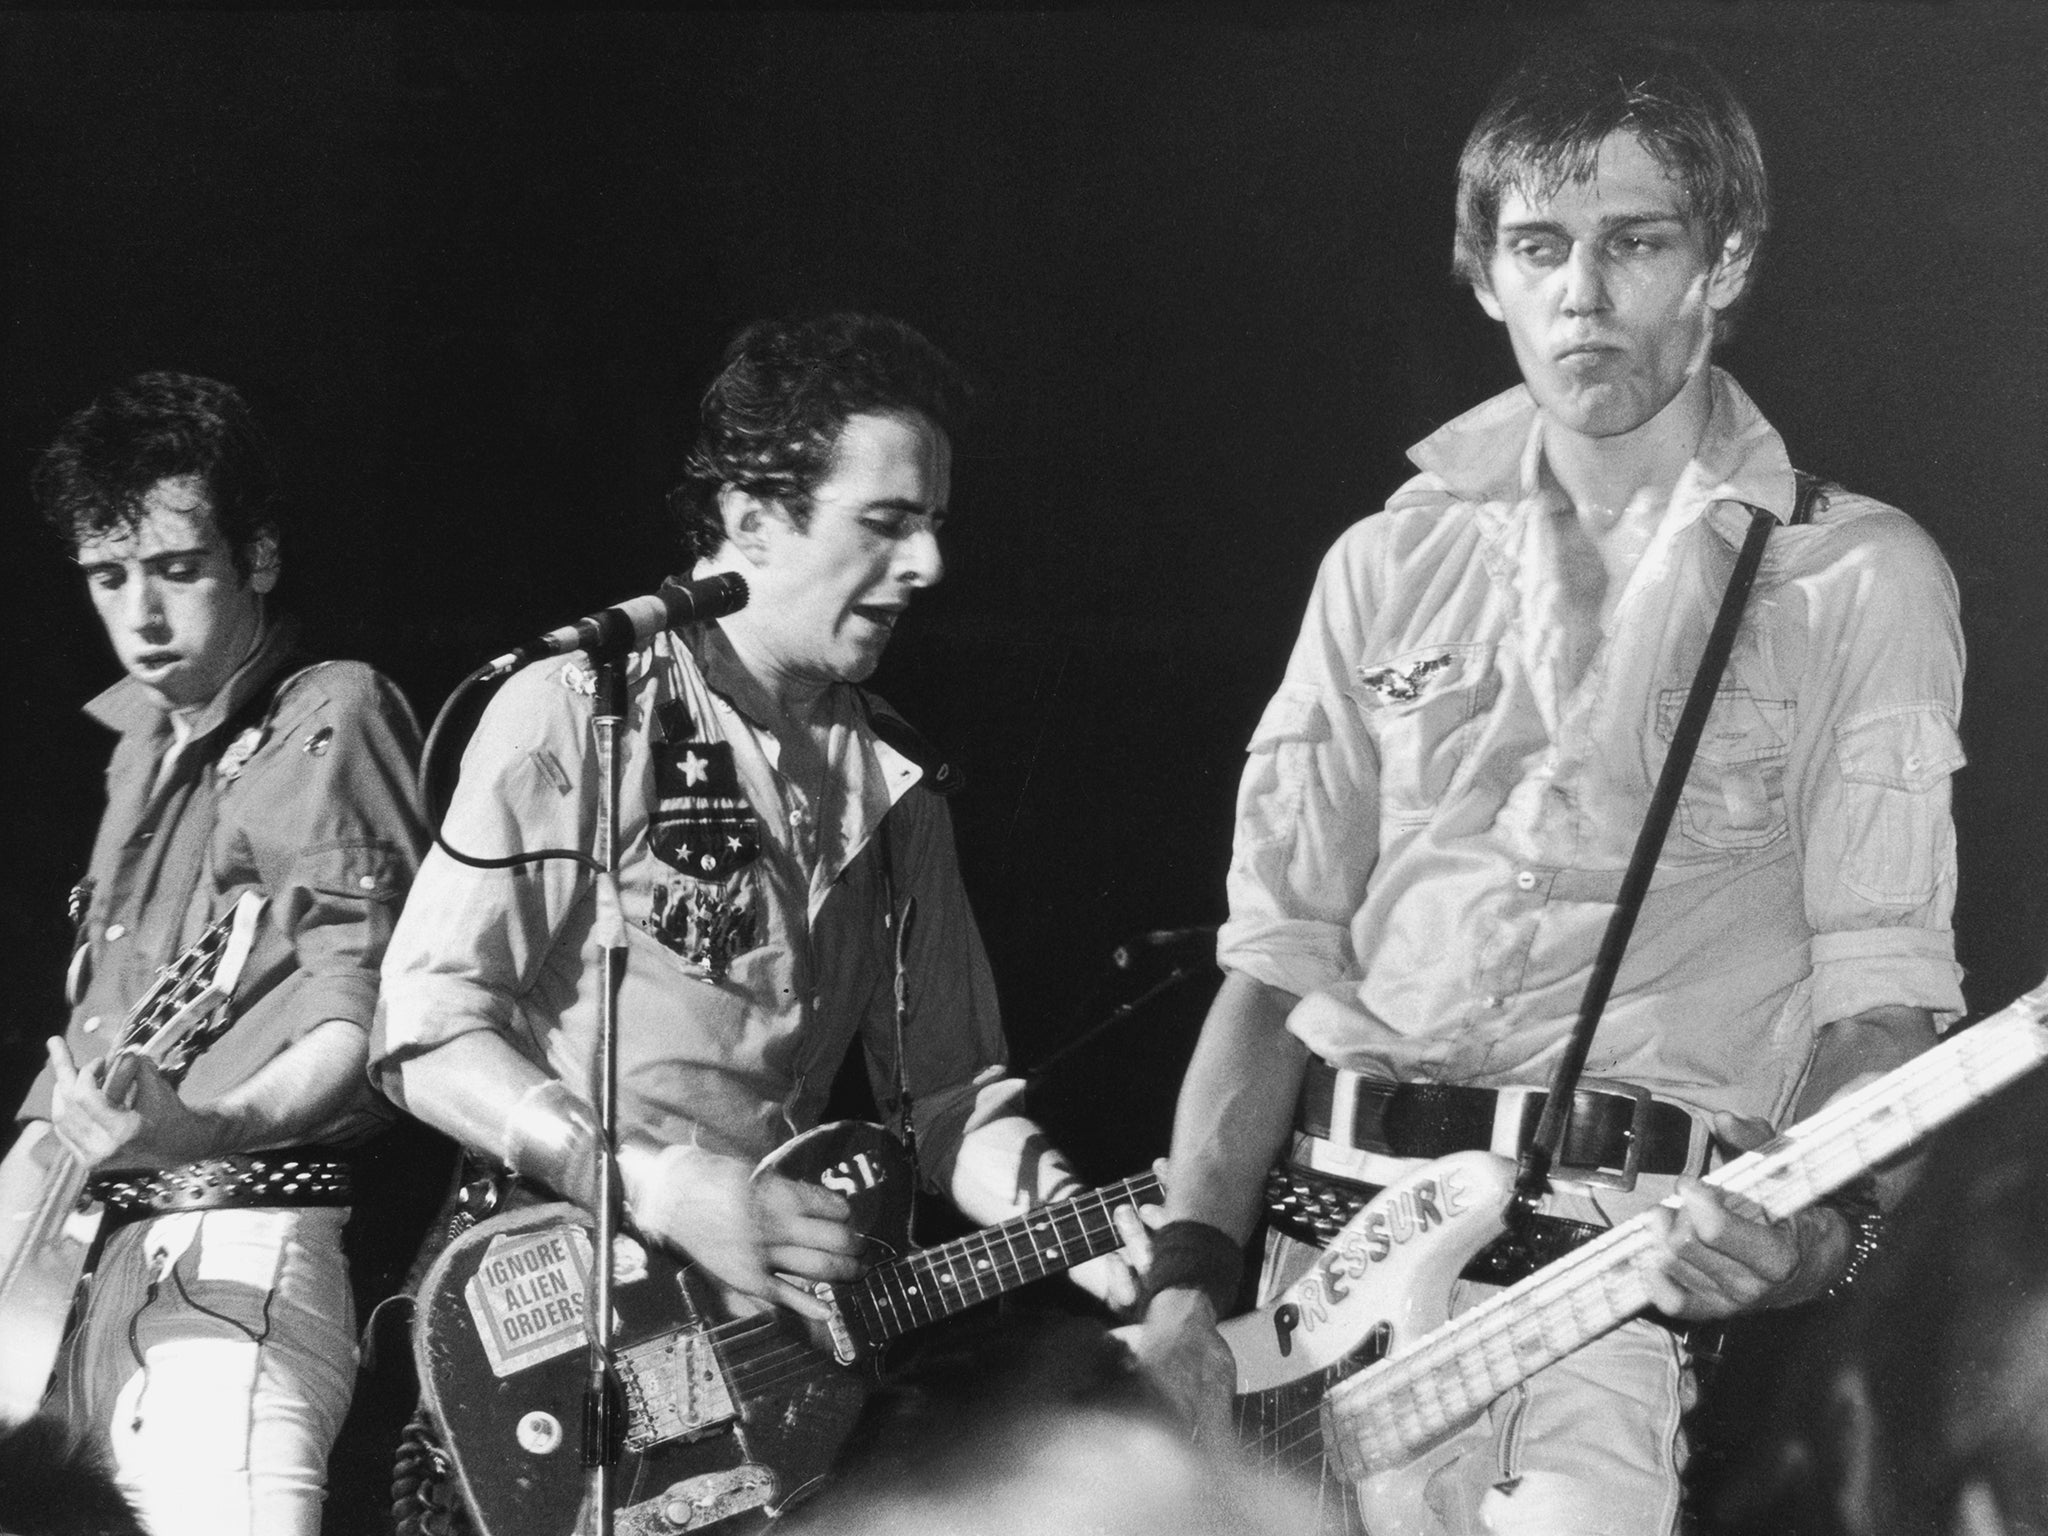 Mick Jones, Joe Strummer and Paul Simonon of The Clash, in concert in 1980